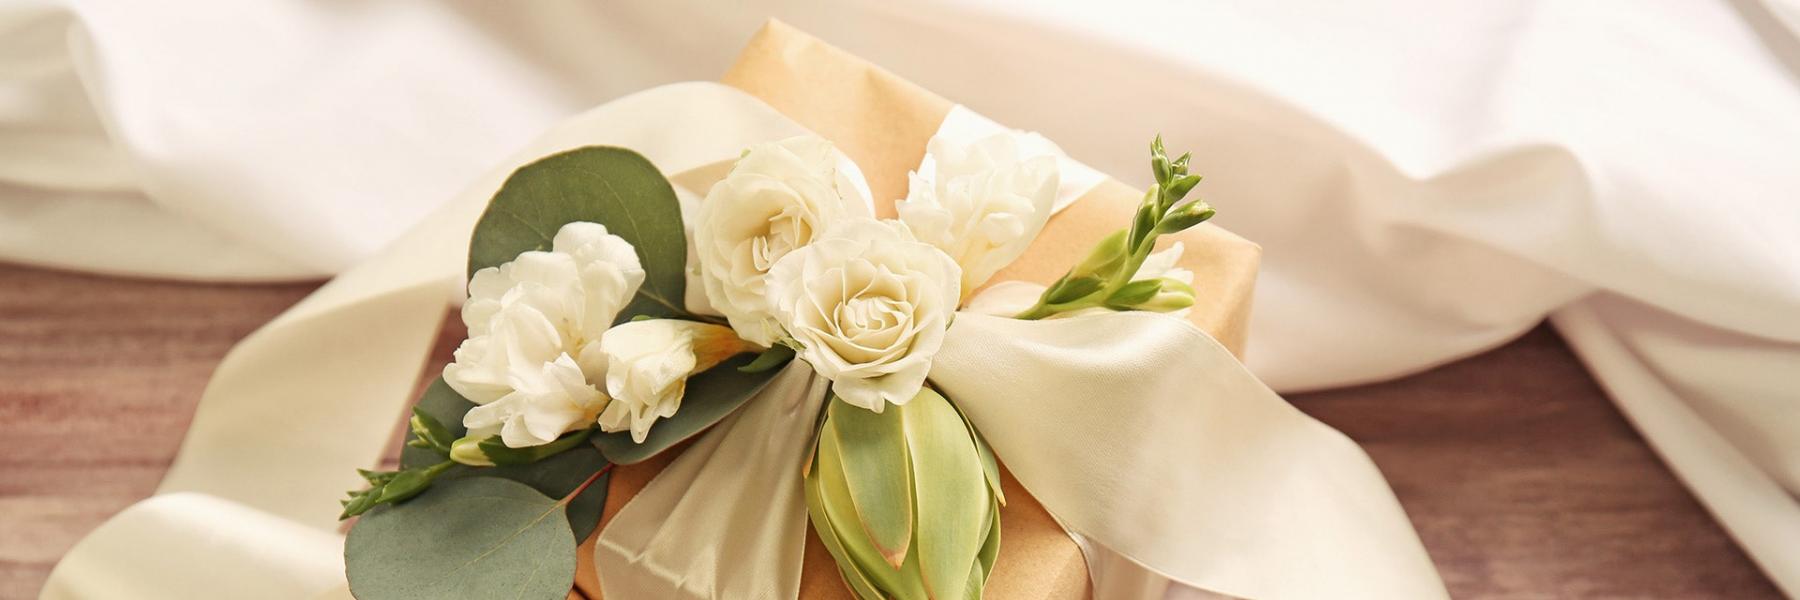 إليك 6 افكار لهدايا زفاف مميزة للعروس